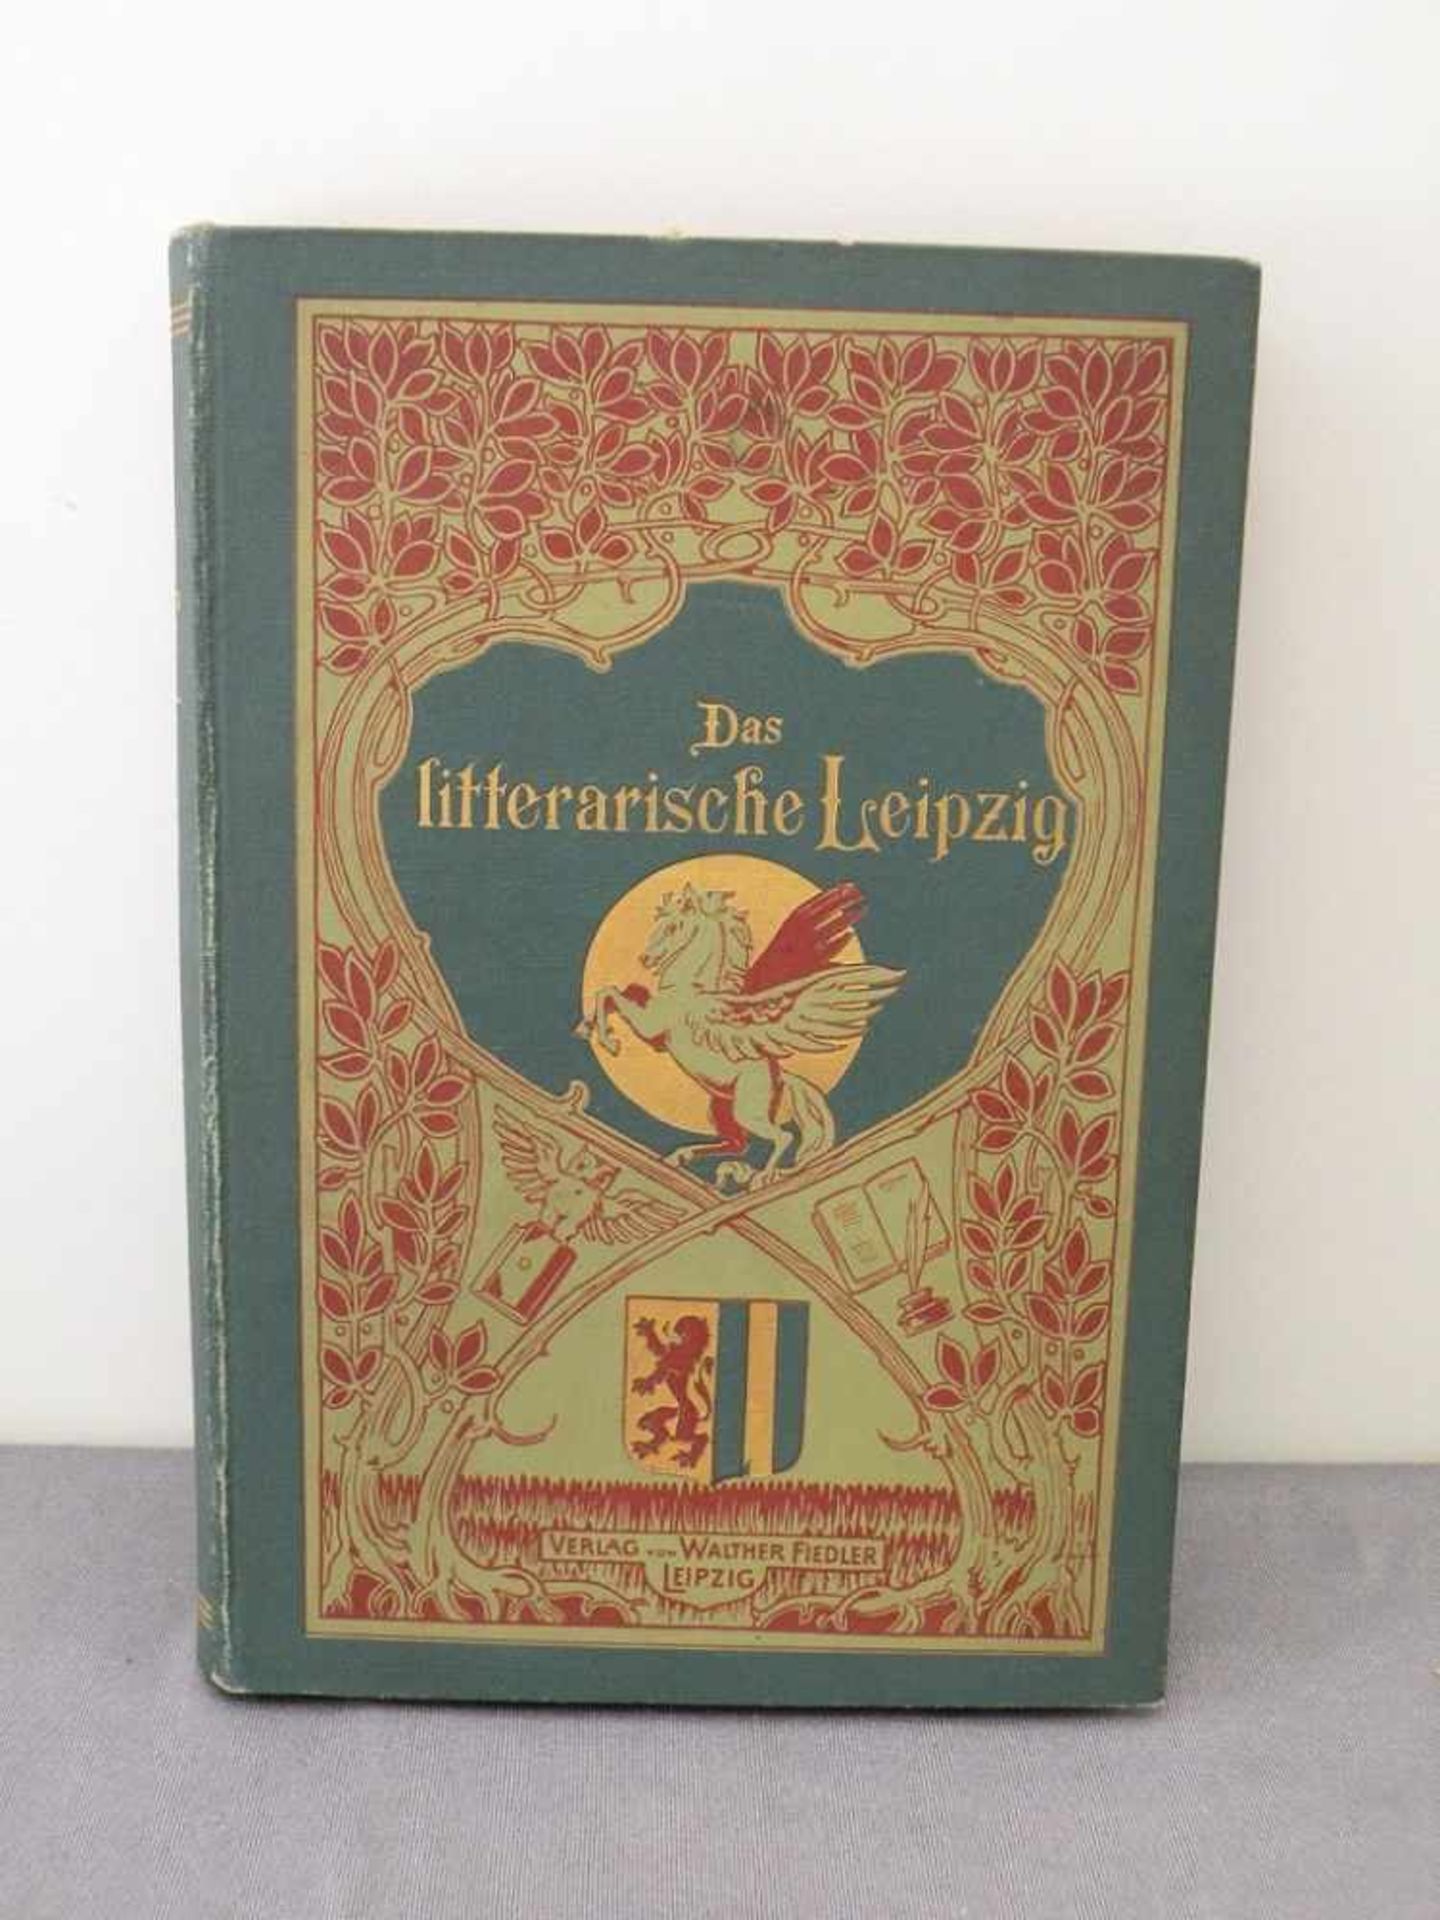 Buch "Das literarische Leipzig", illustriert, 1897